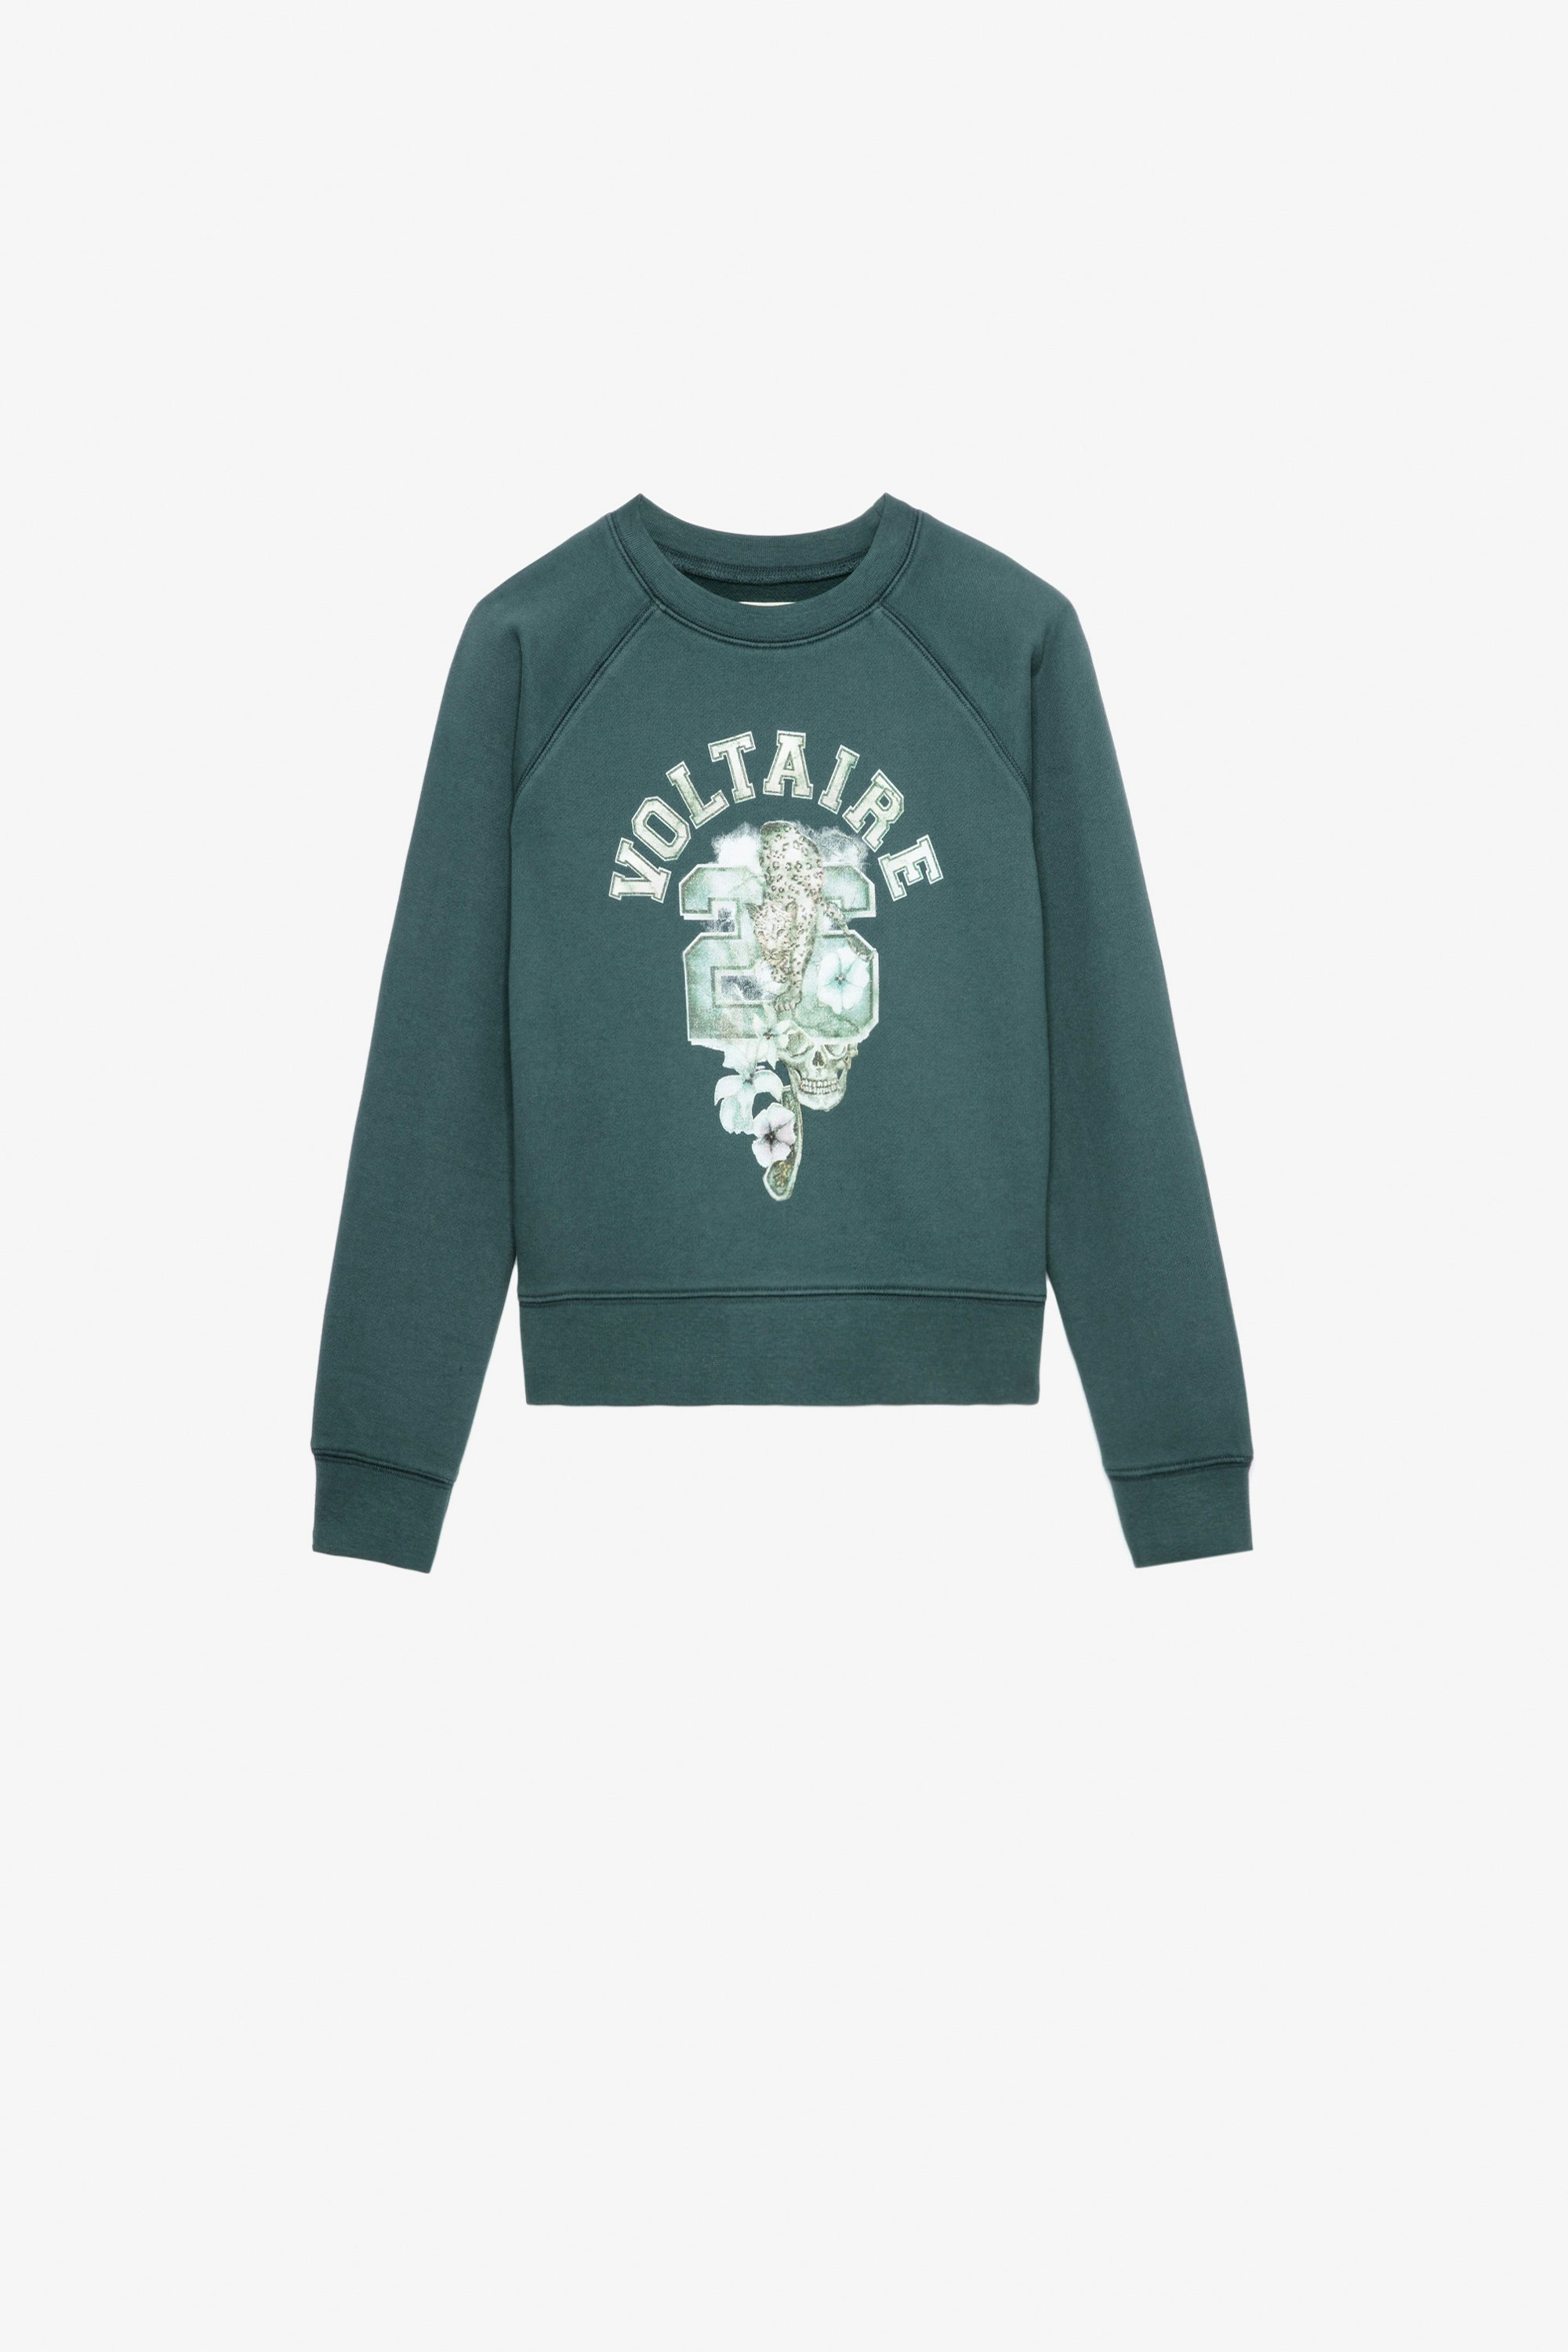 Sweatshirt Upper Fille - Sweatshirt en coton molletonné vert orné d'une illustration Voltaire fille.